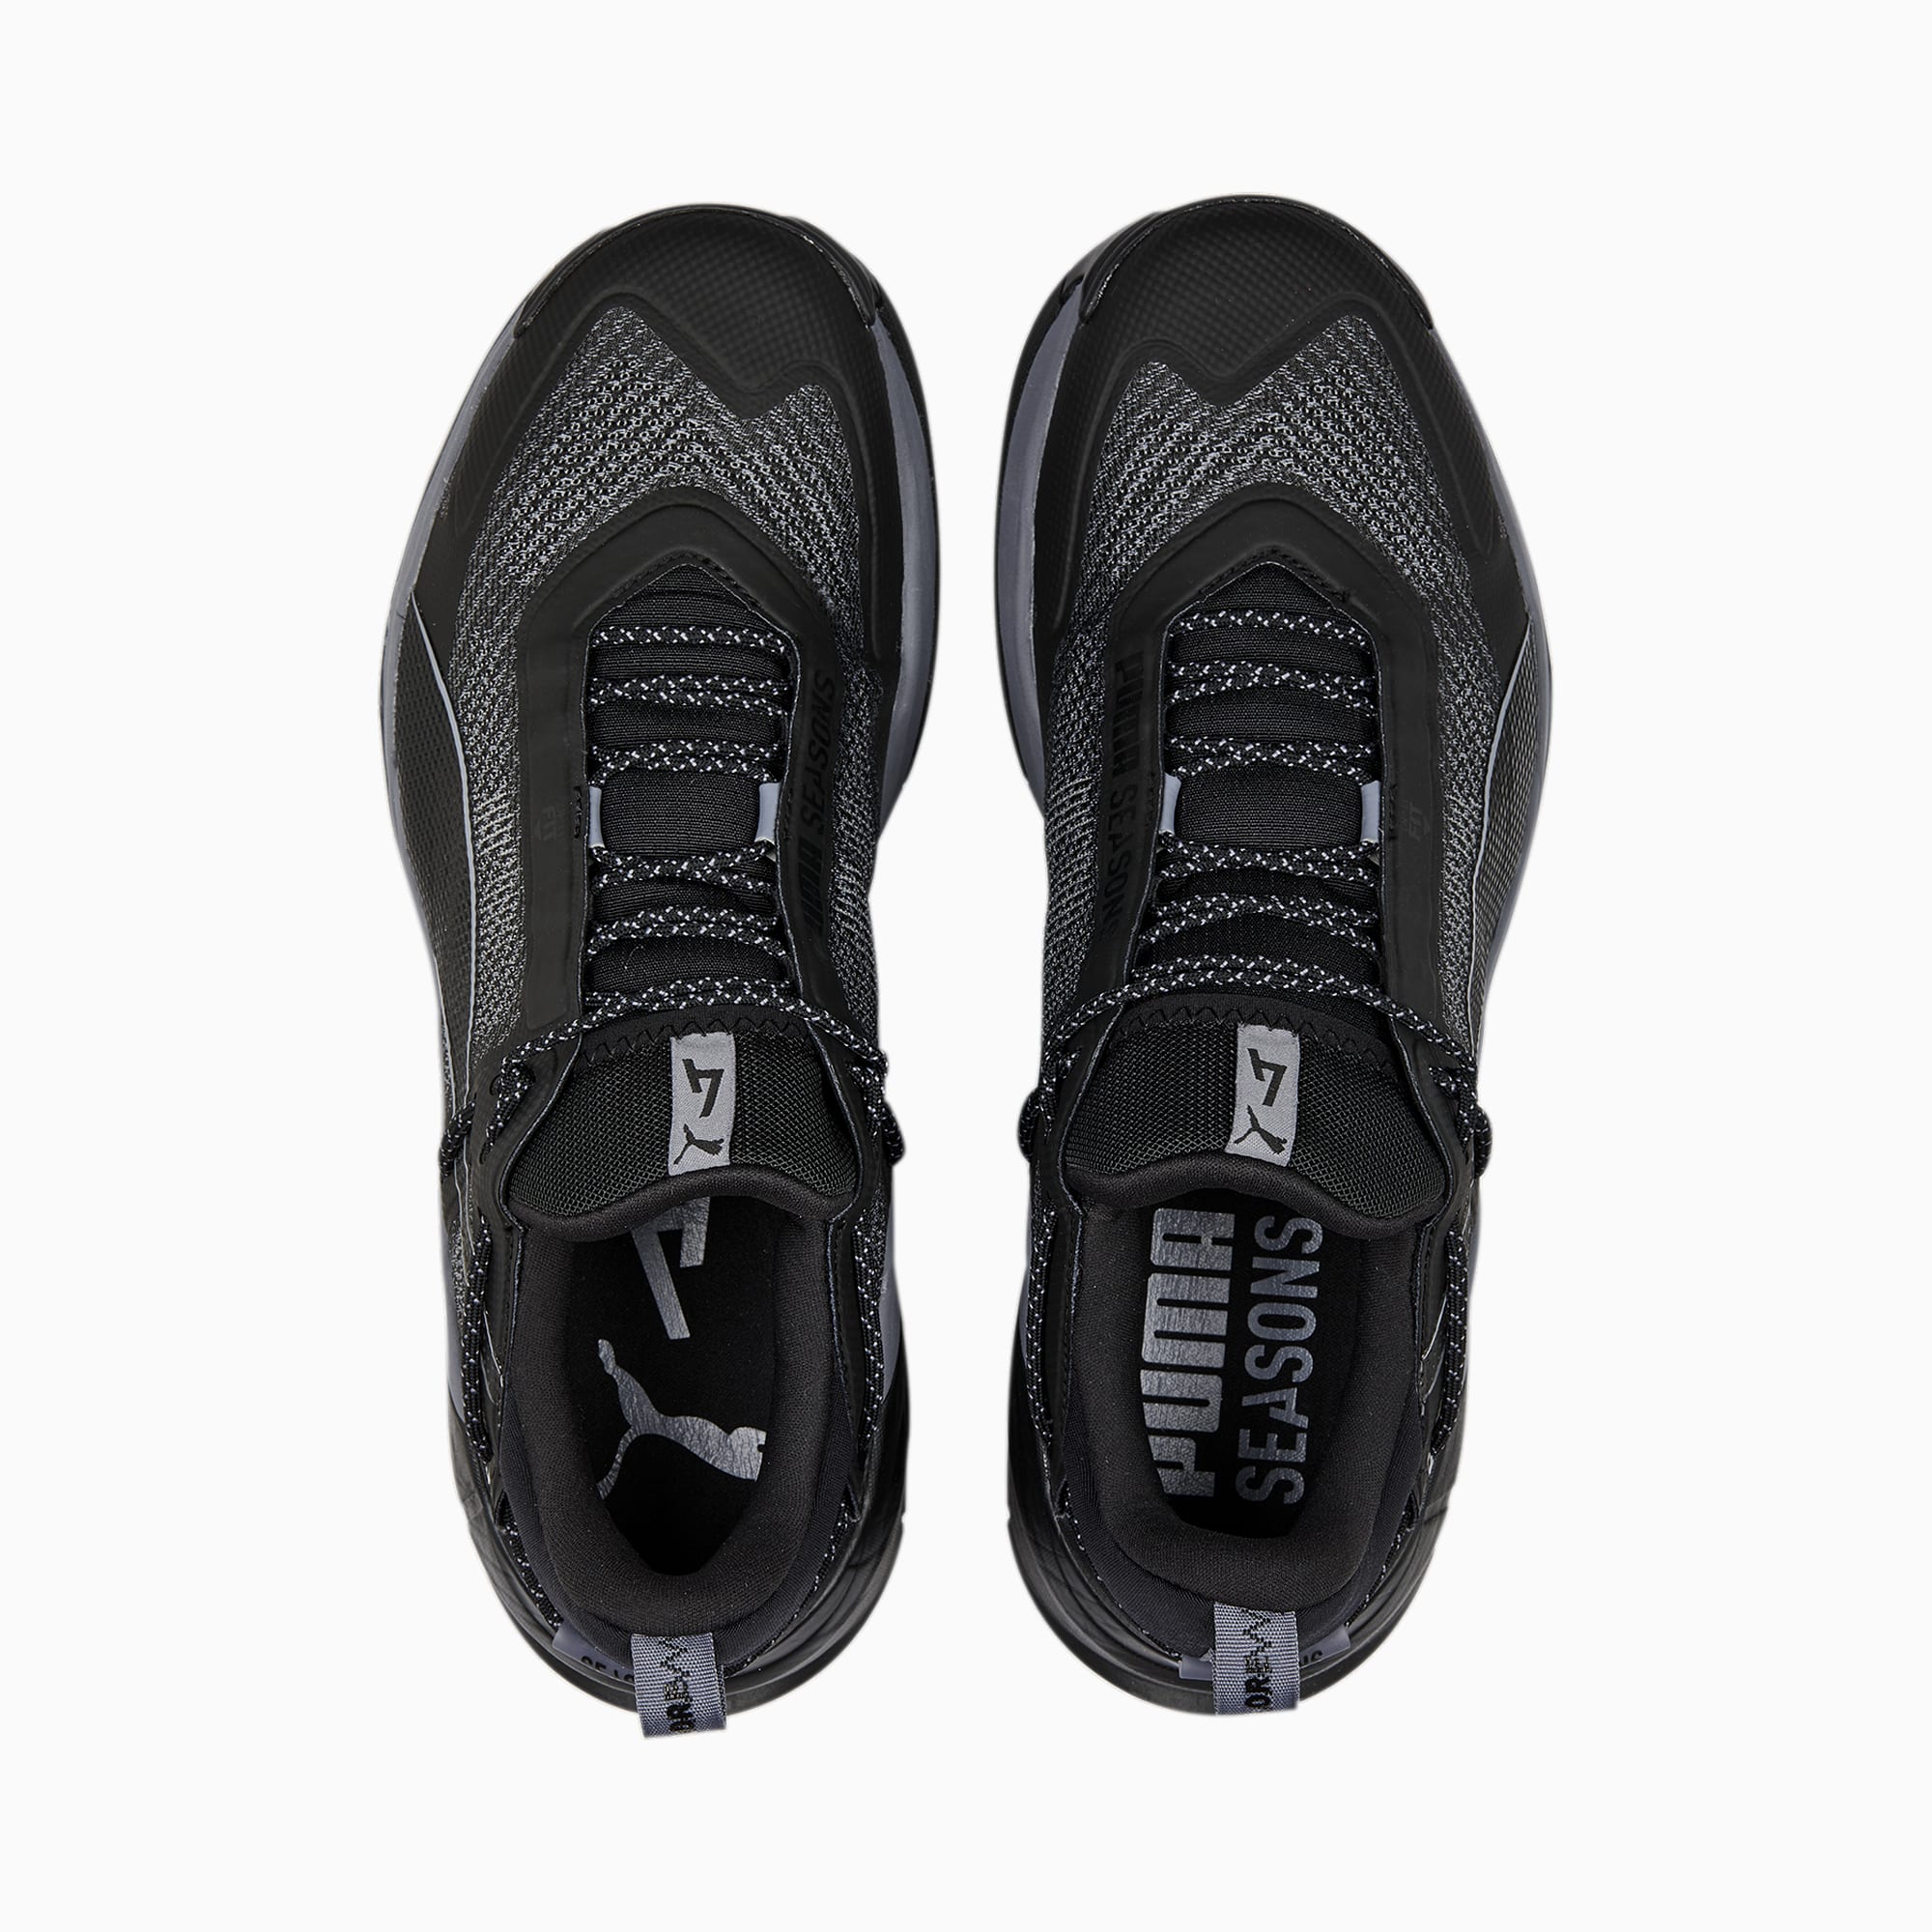 PUMA Explore Nitro™ Men's Hiking Shoe Sneakers, Black/Grey Tile